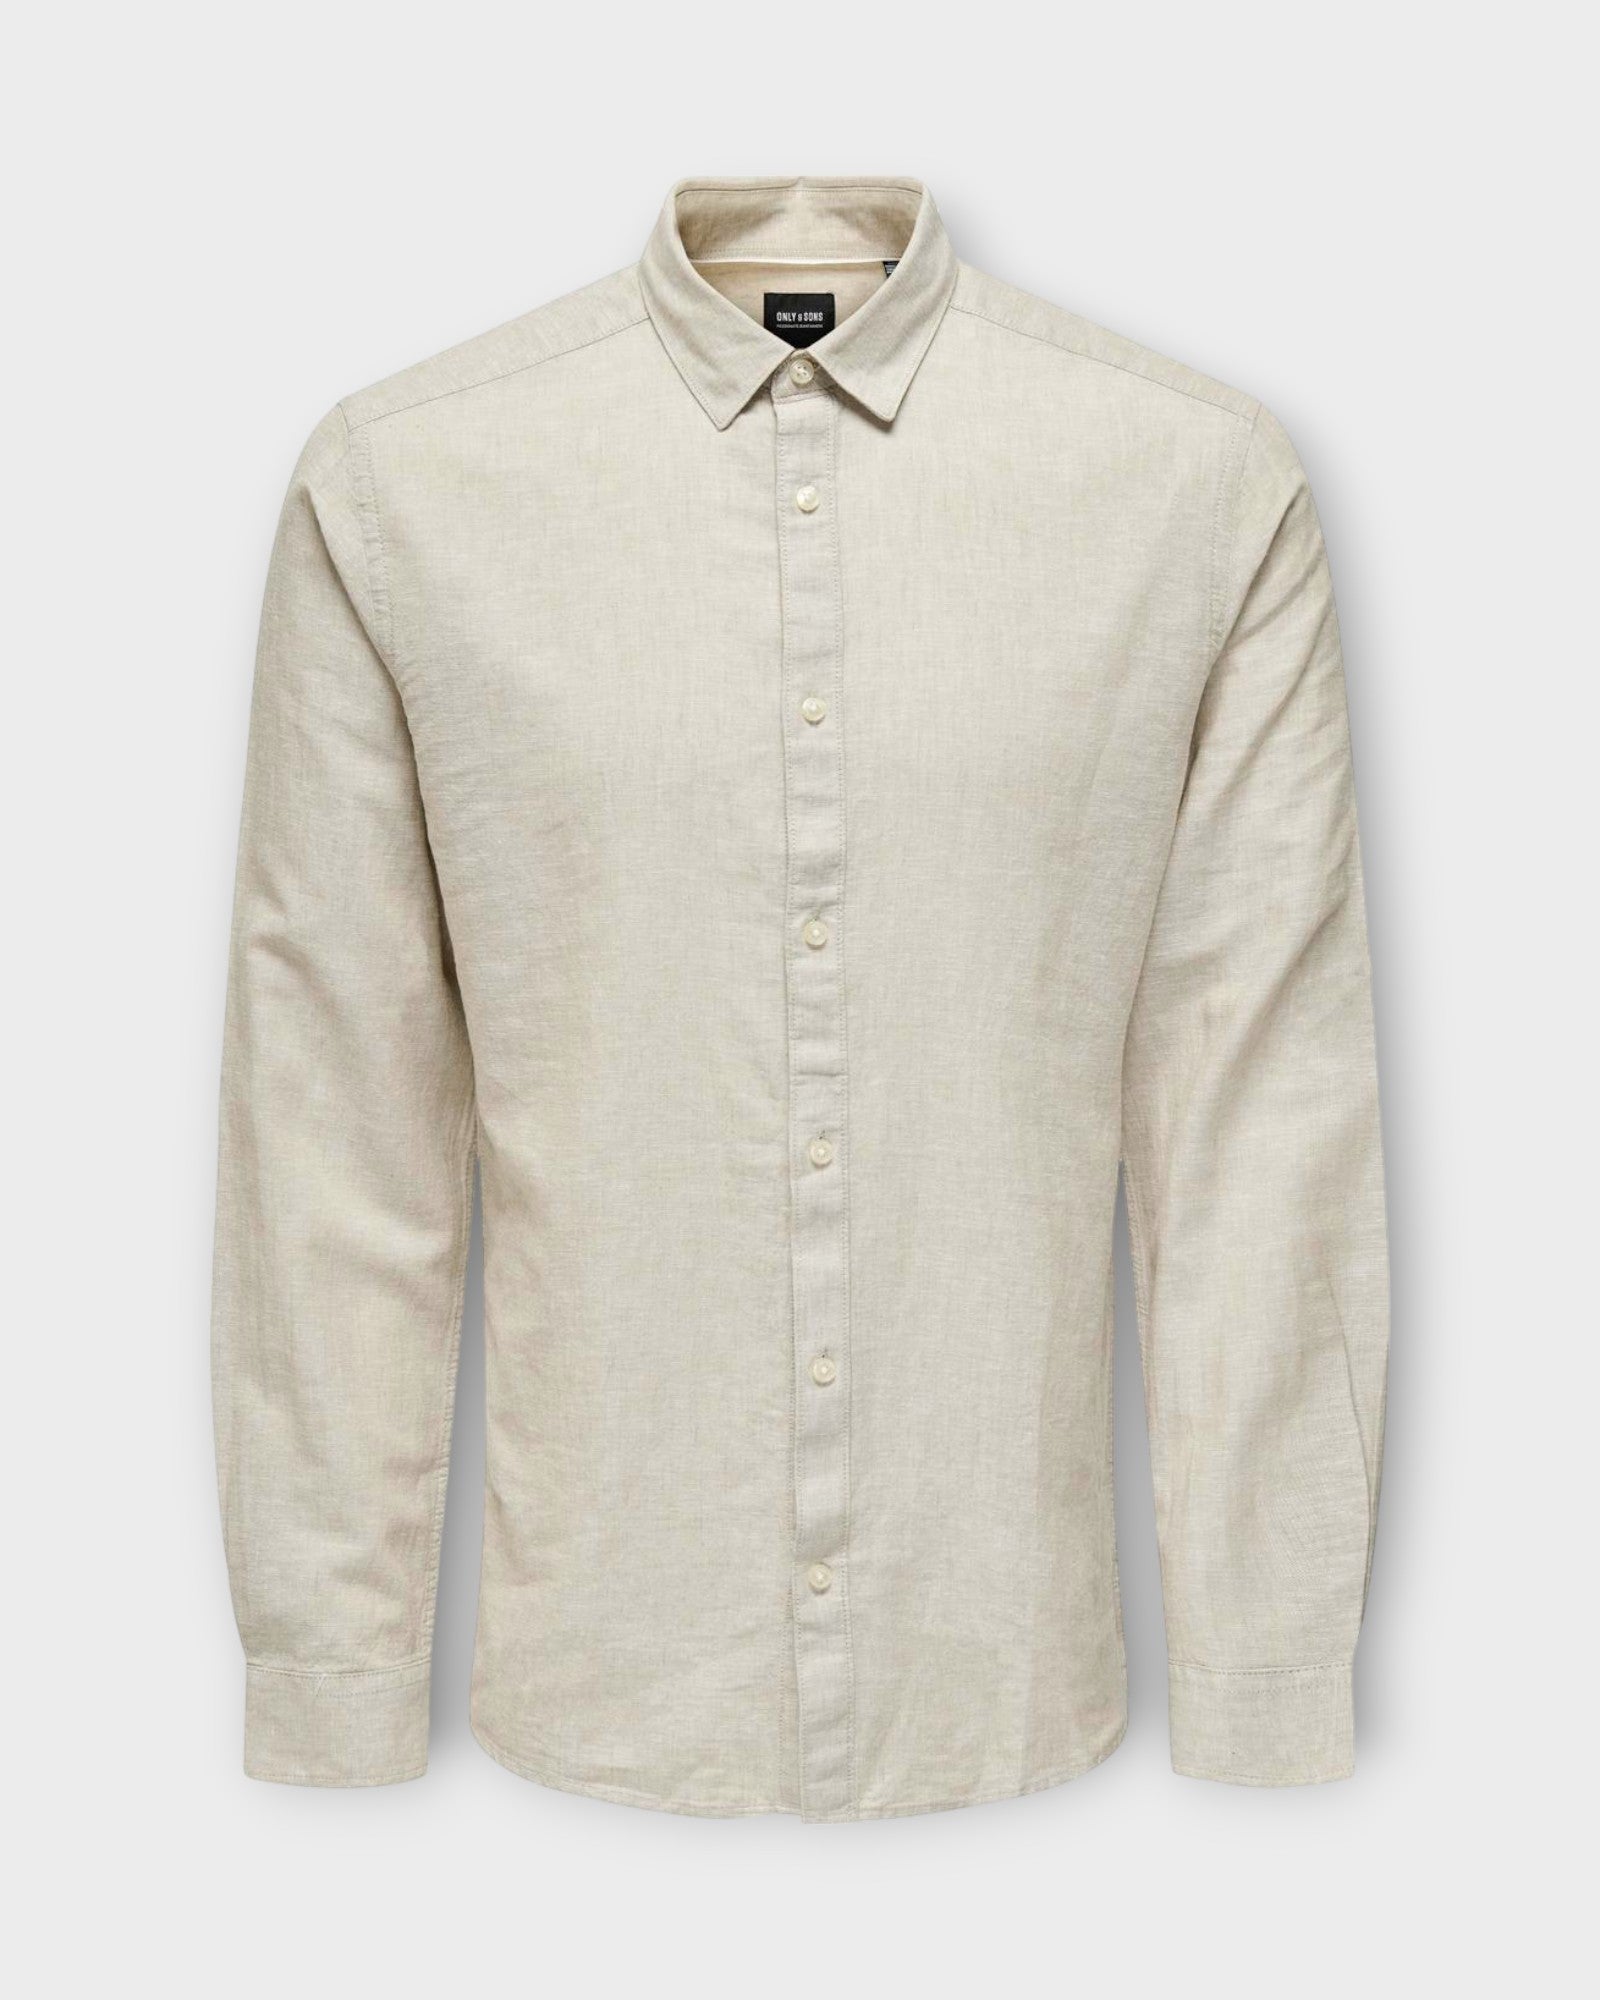 Caiden  LS Solid Linen Shirt Chinchilla, sandfarvet hørskjorte til mænd fra Only and Sons. Her set forfra.